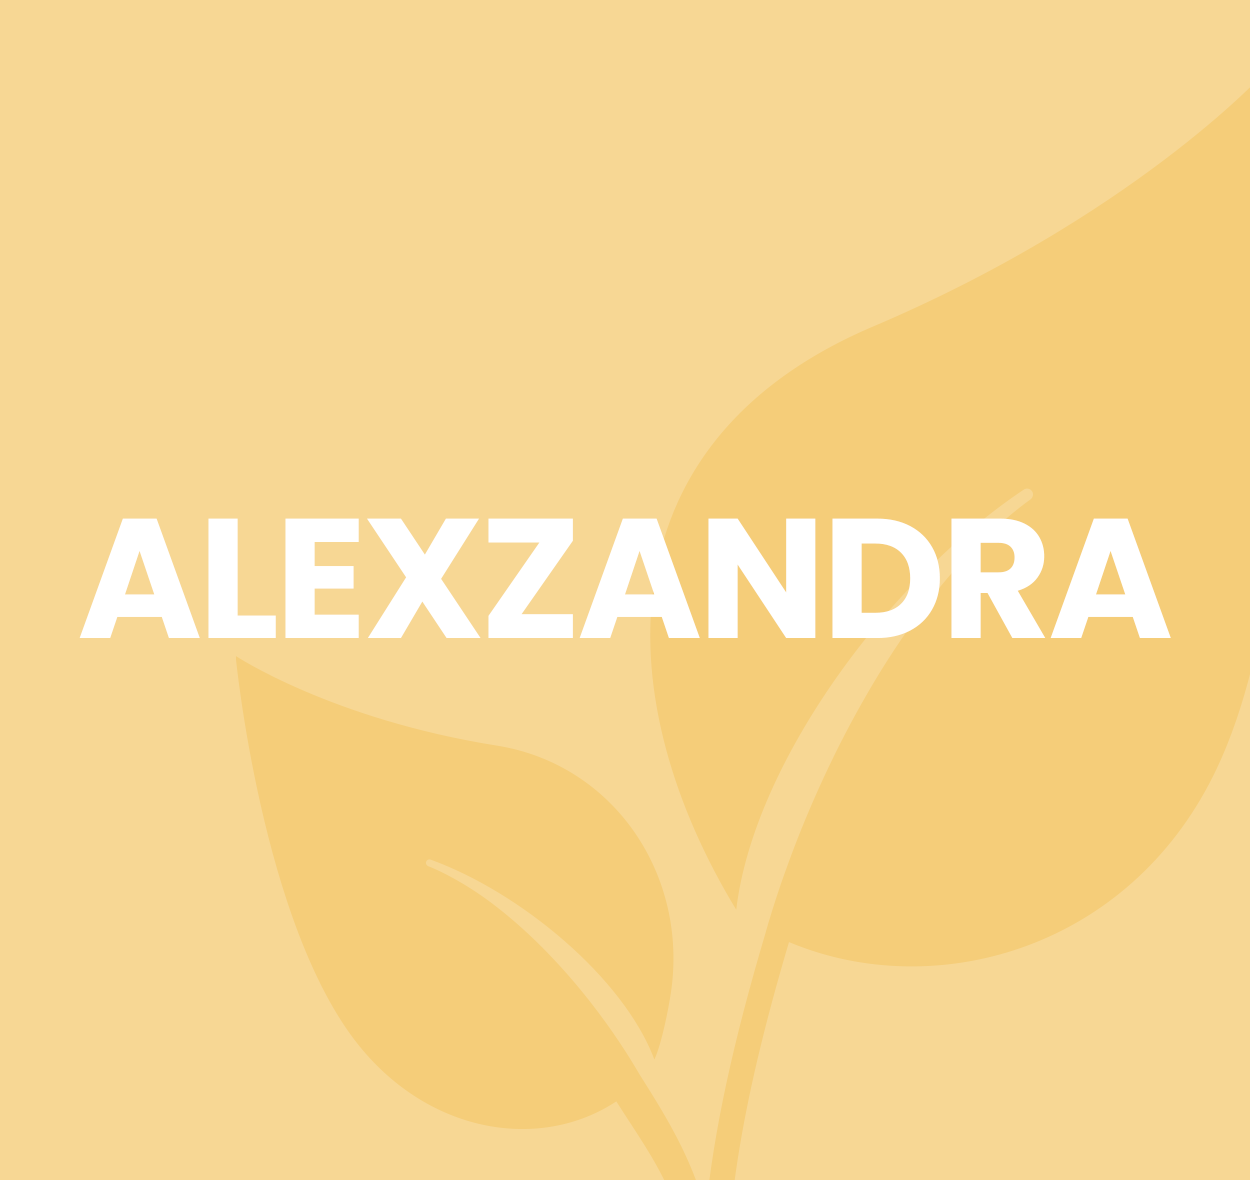 Alexzandra